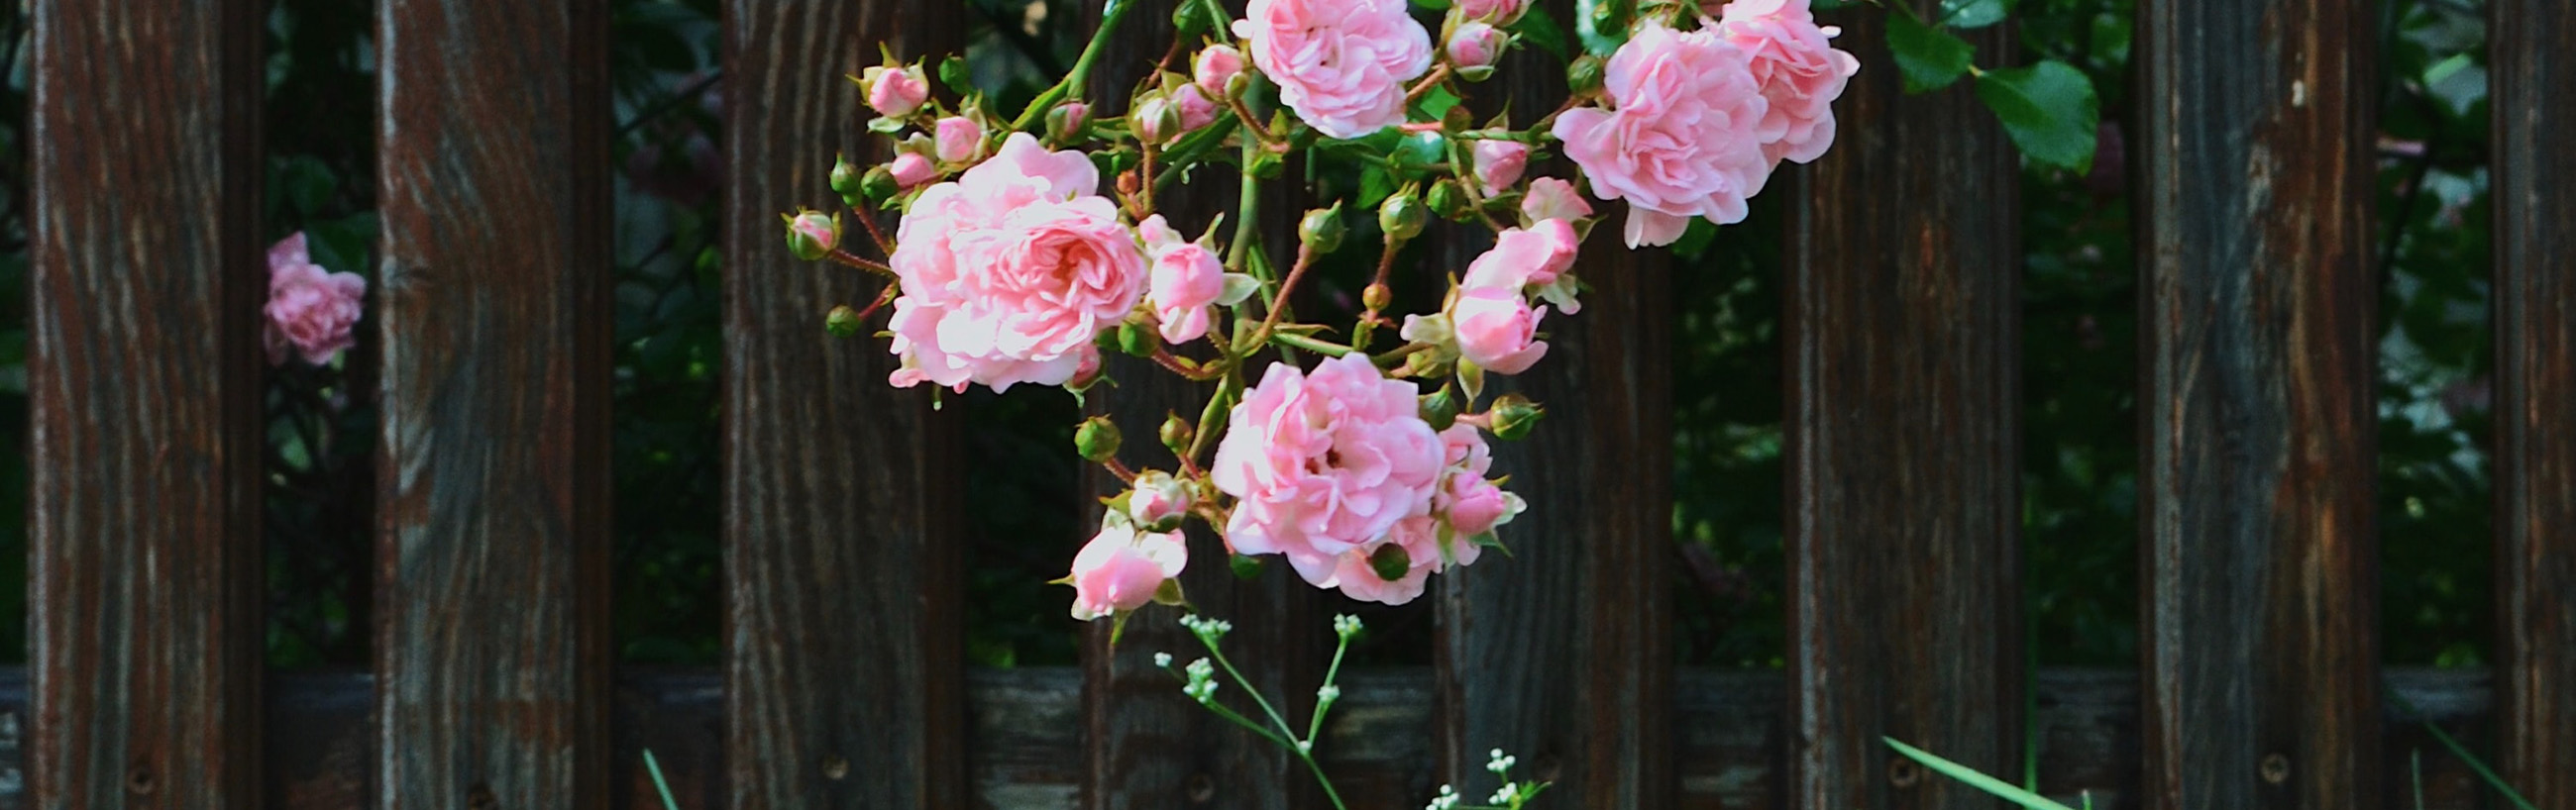 Rosen ranken an einem Zaun